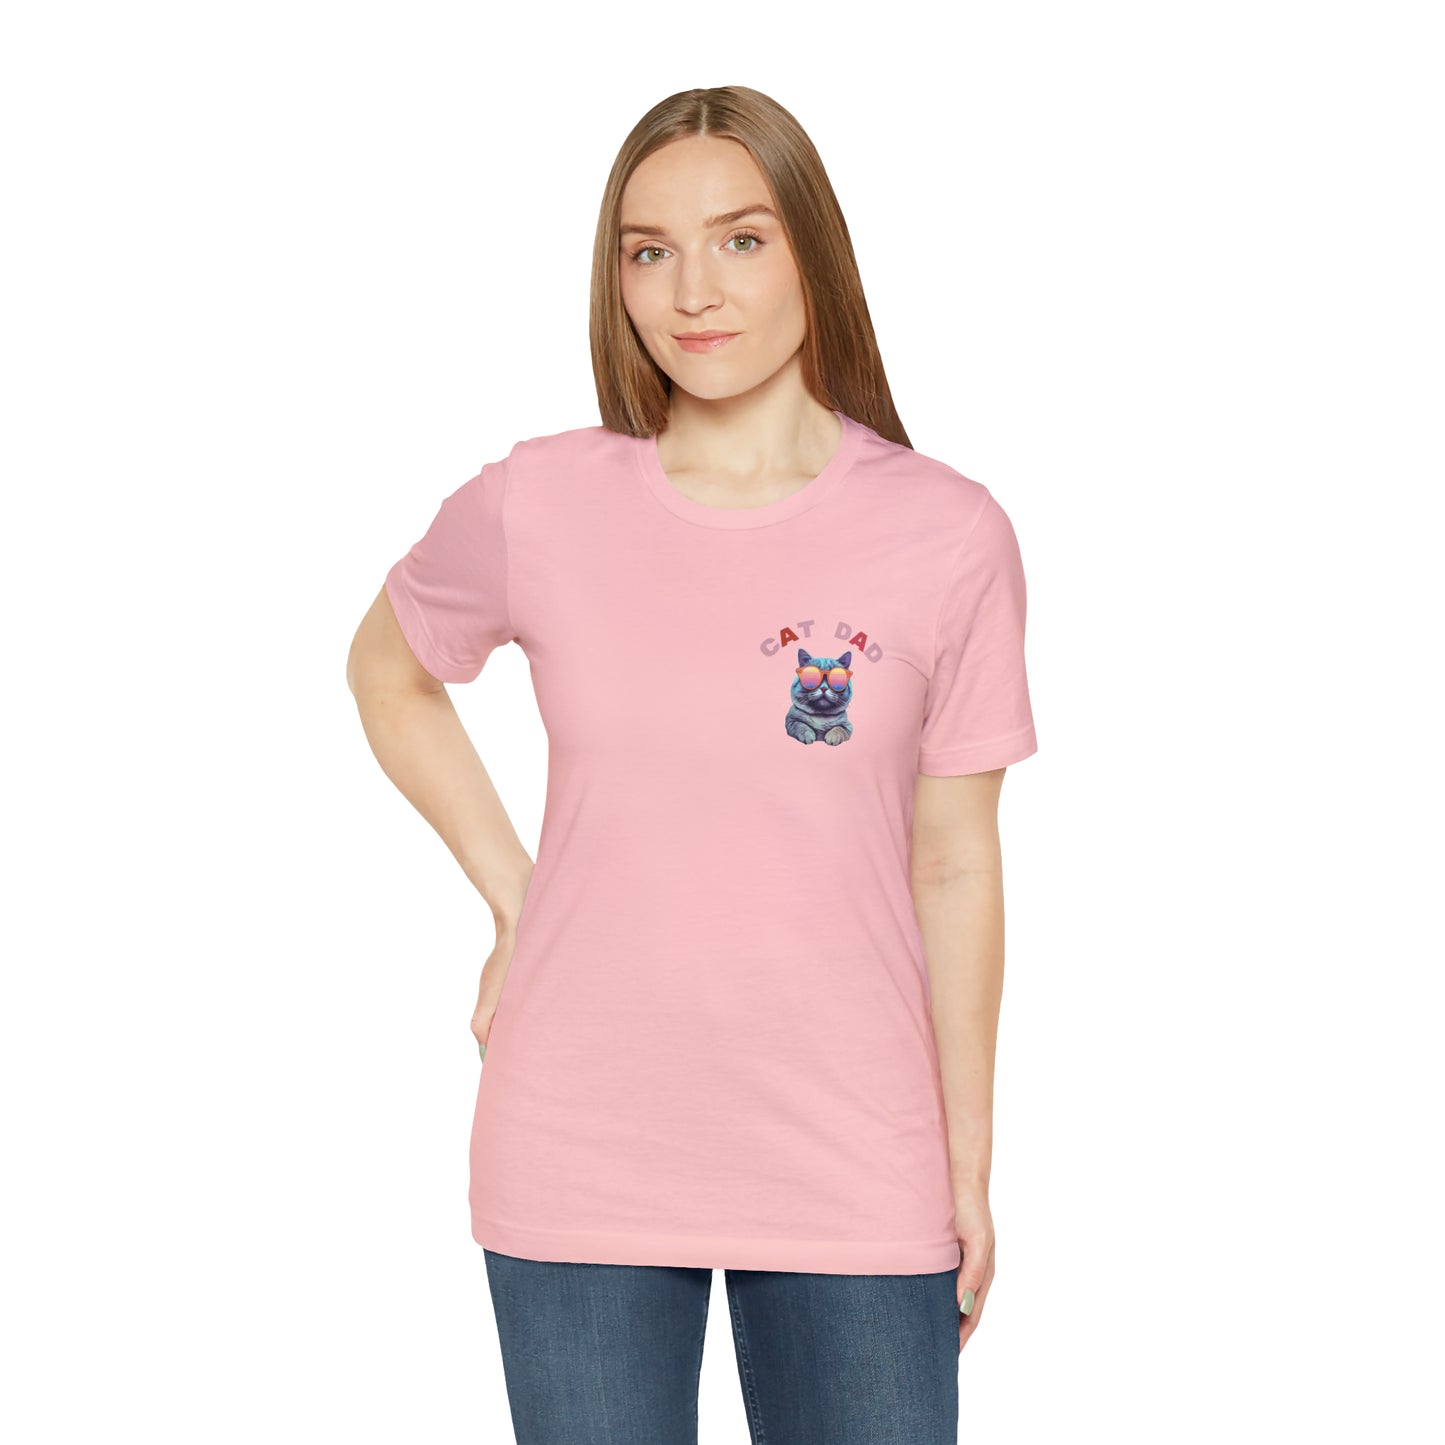 Cat Dad T-Shirt, Funny Cat Tee, Cat Father, Cat Dad, Cat Daddy Shirt, Gift from the Cat, Cat Dad Gift, Cat Lover Shirt, T246